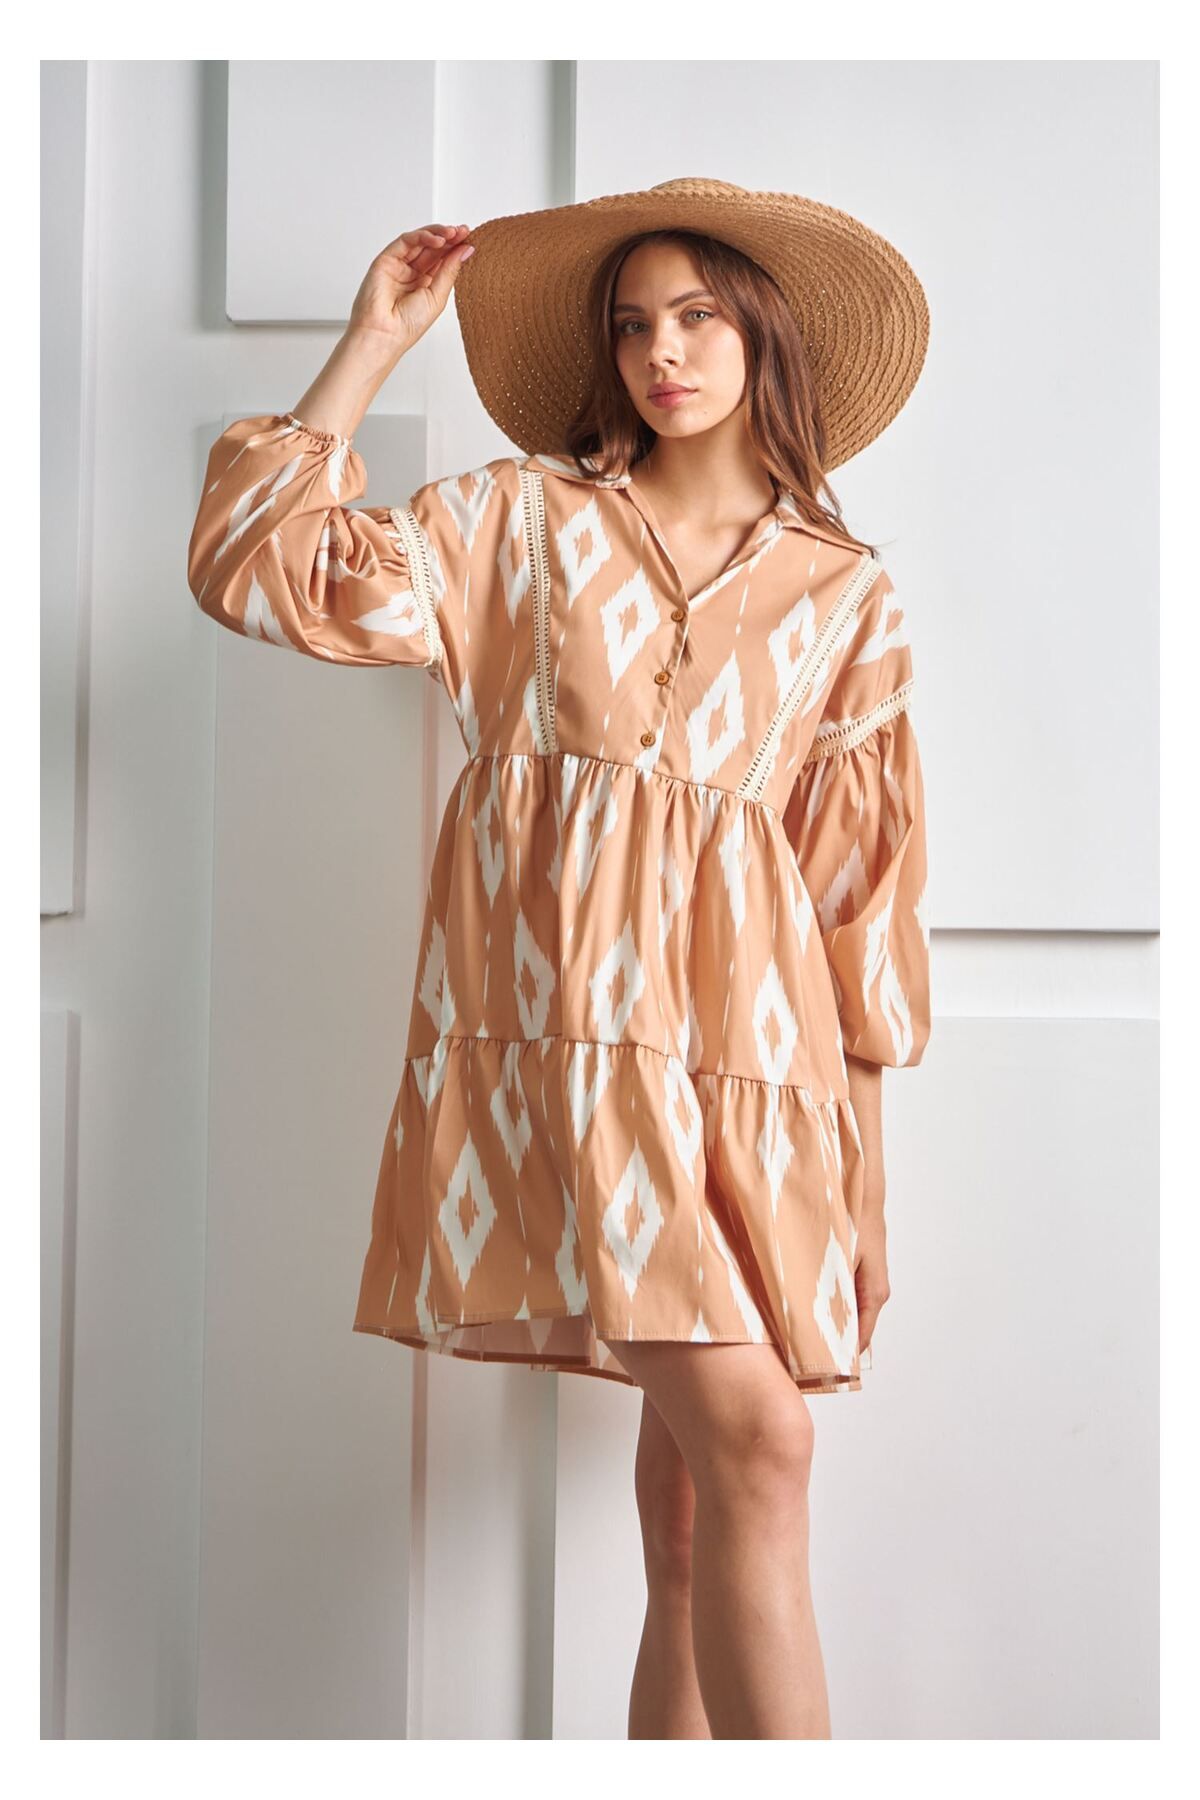 Tiffany Tomato Dantel Detaylı Fırfırlı Elbise-Camel